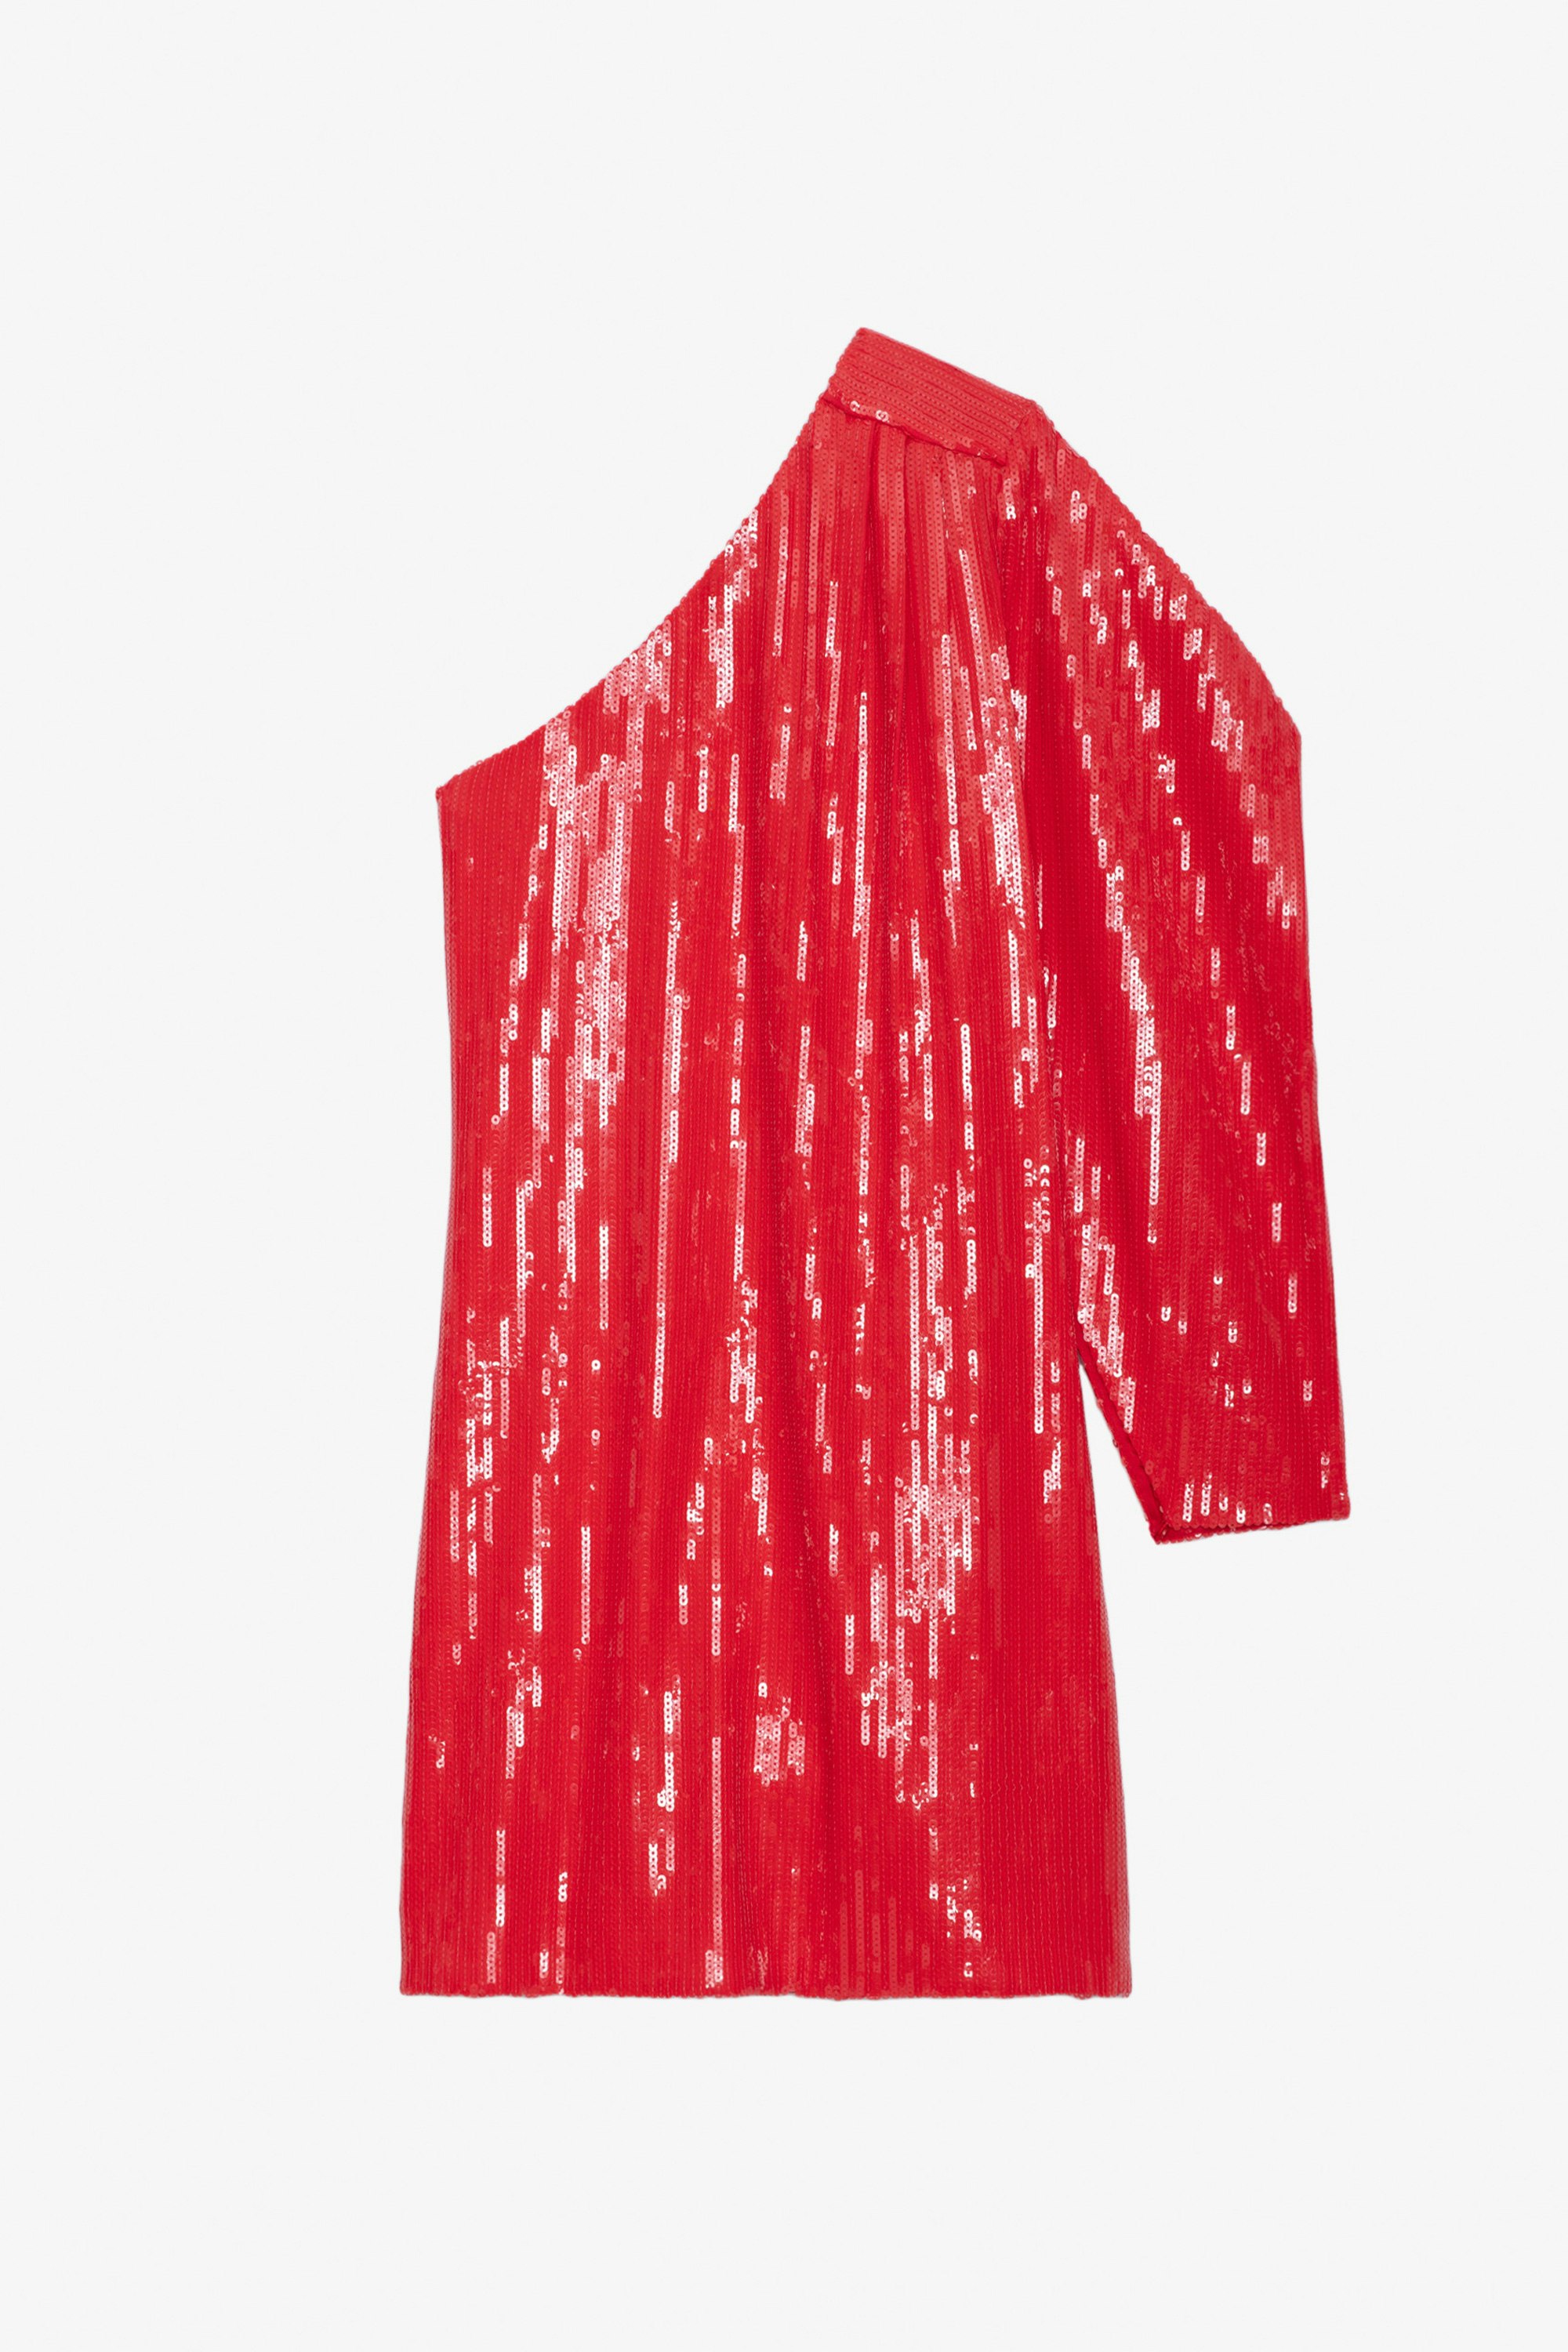 Vestido de Lentejuelas Roely - Vestido rojo corto con lentejuelas y manga asimétrica y drapeada.